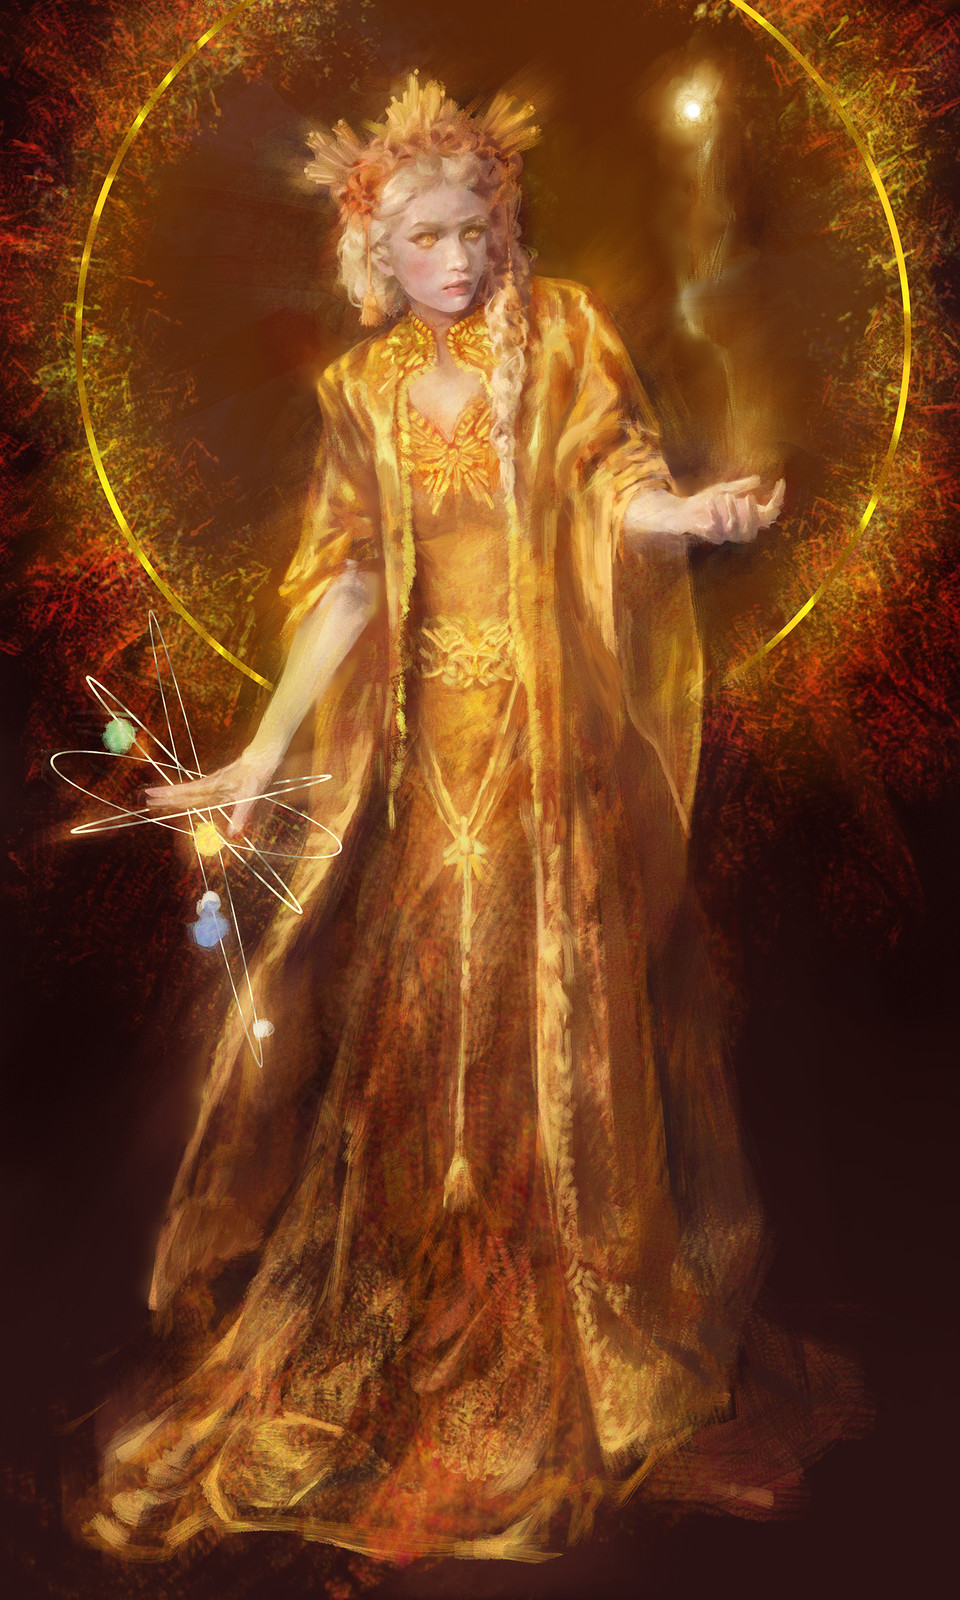 Resultado de imagem para sun goddess fantasy art